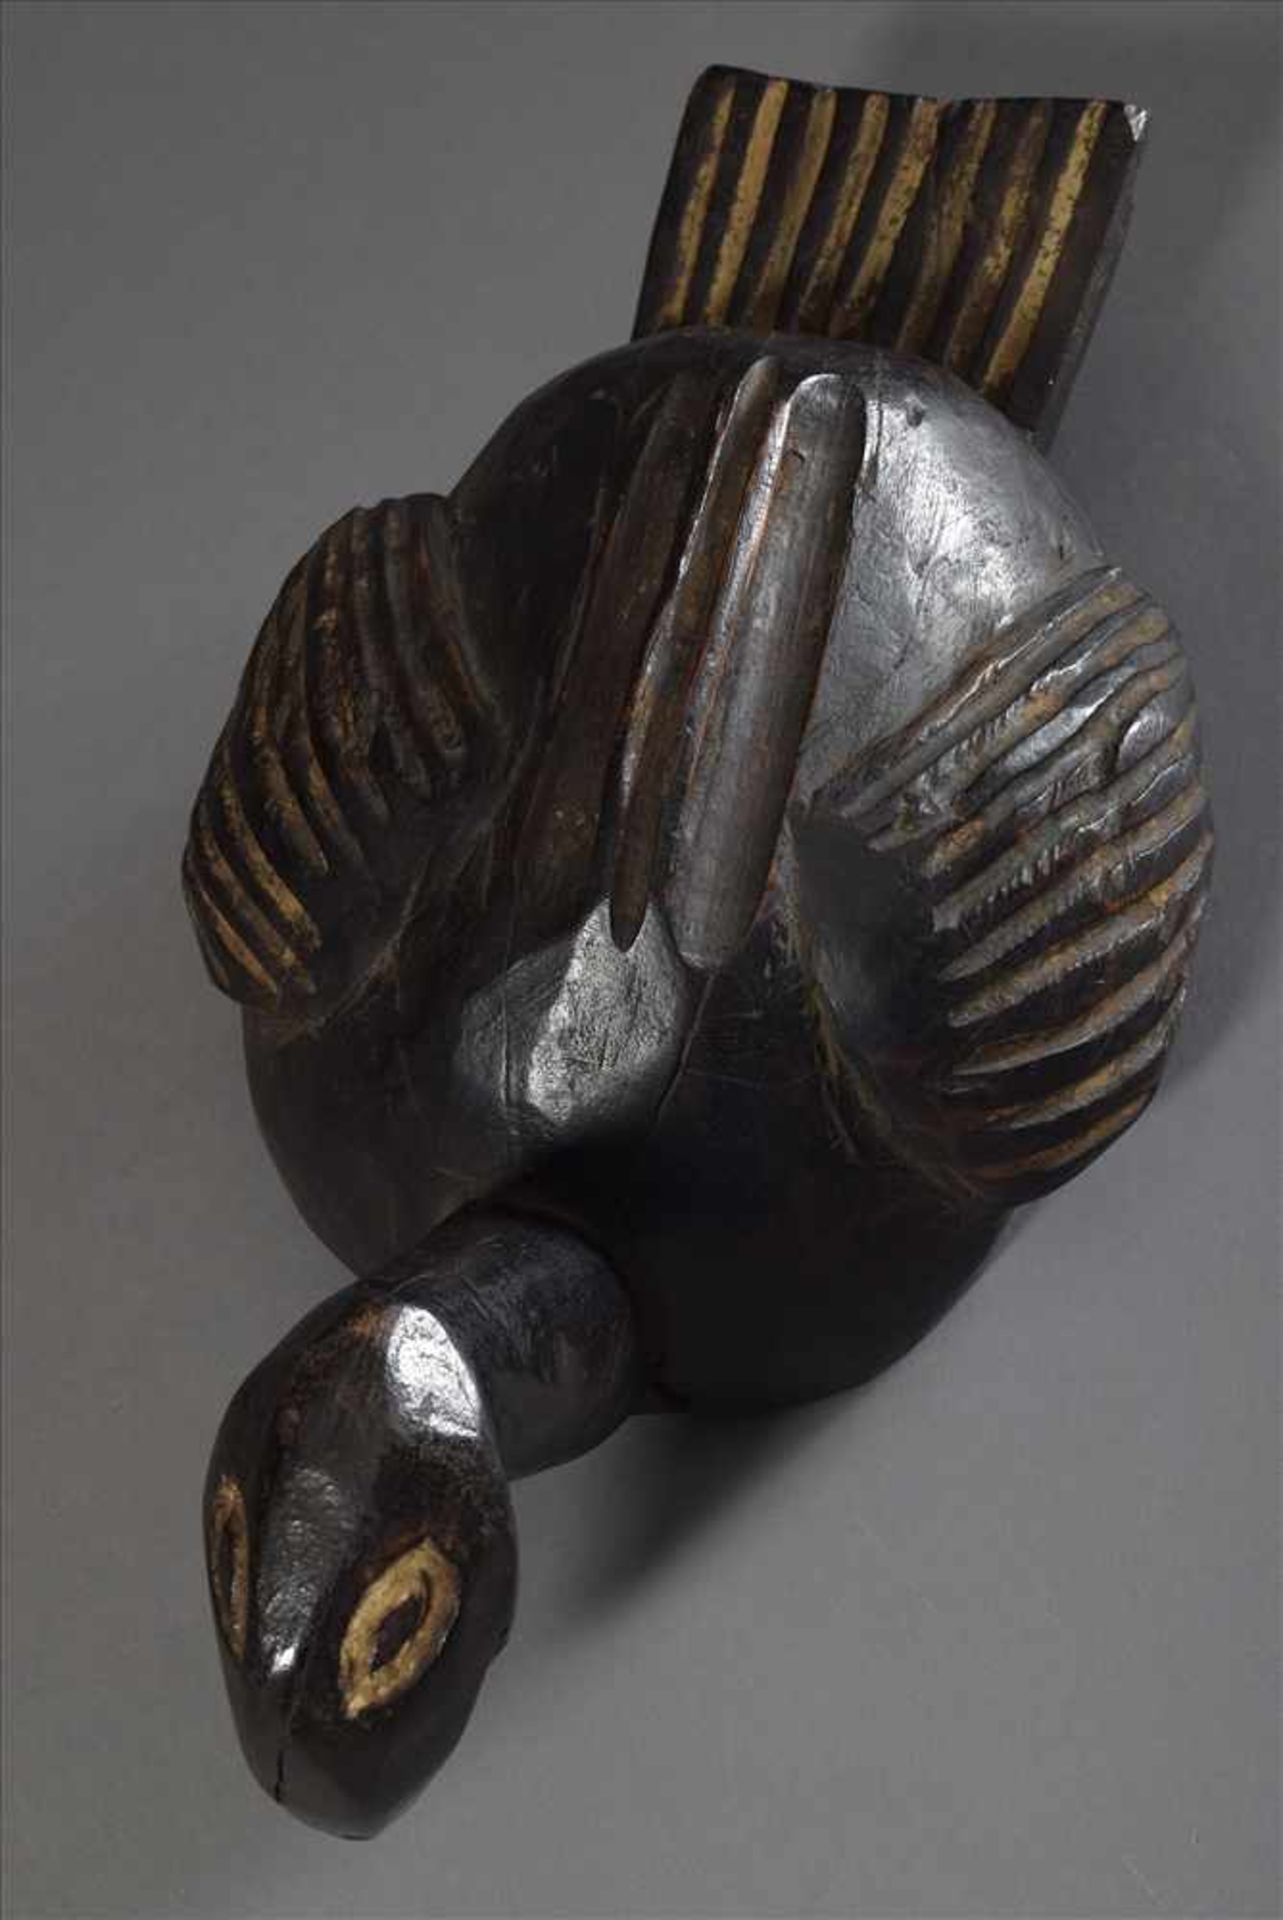 Aufsatz-/Helmmaske der Kosi/Bamileke in Form einer Ente oder Pelikan, Holz, dunkel gefärbt, - Image 4 of 4